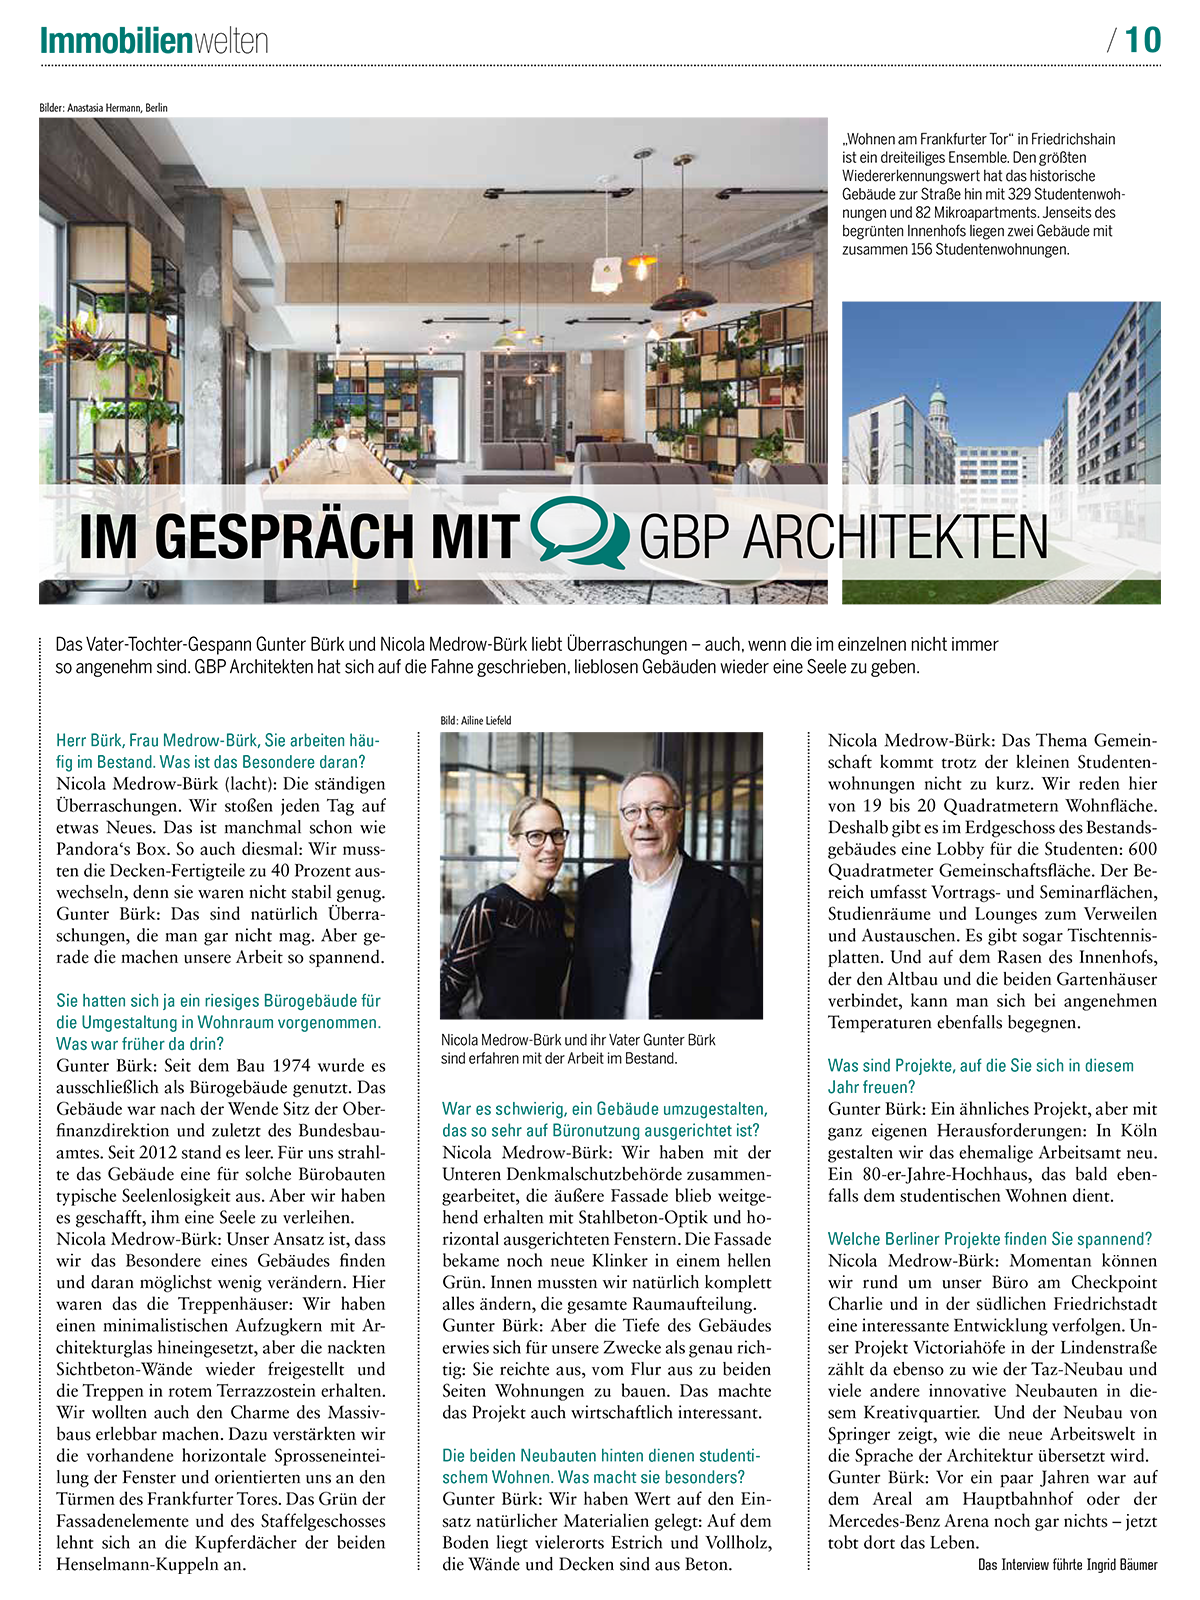 Interview "Im Gespräch mit GBP Architekten" in der Sonderbeilage Immobilienwelten der Berliner Zeitung, 20.01.2019